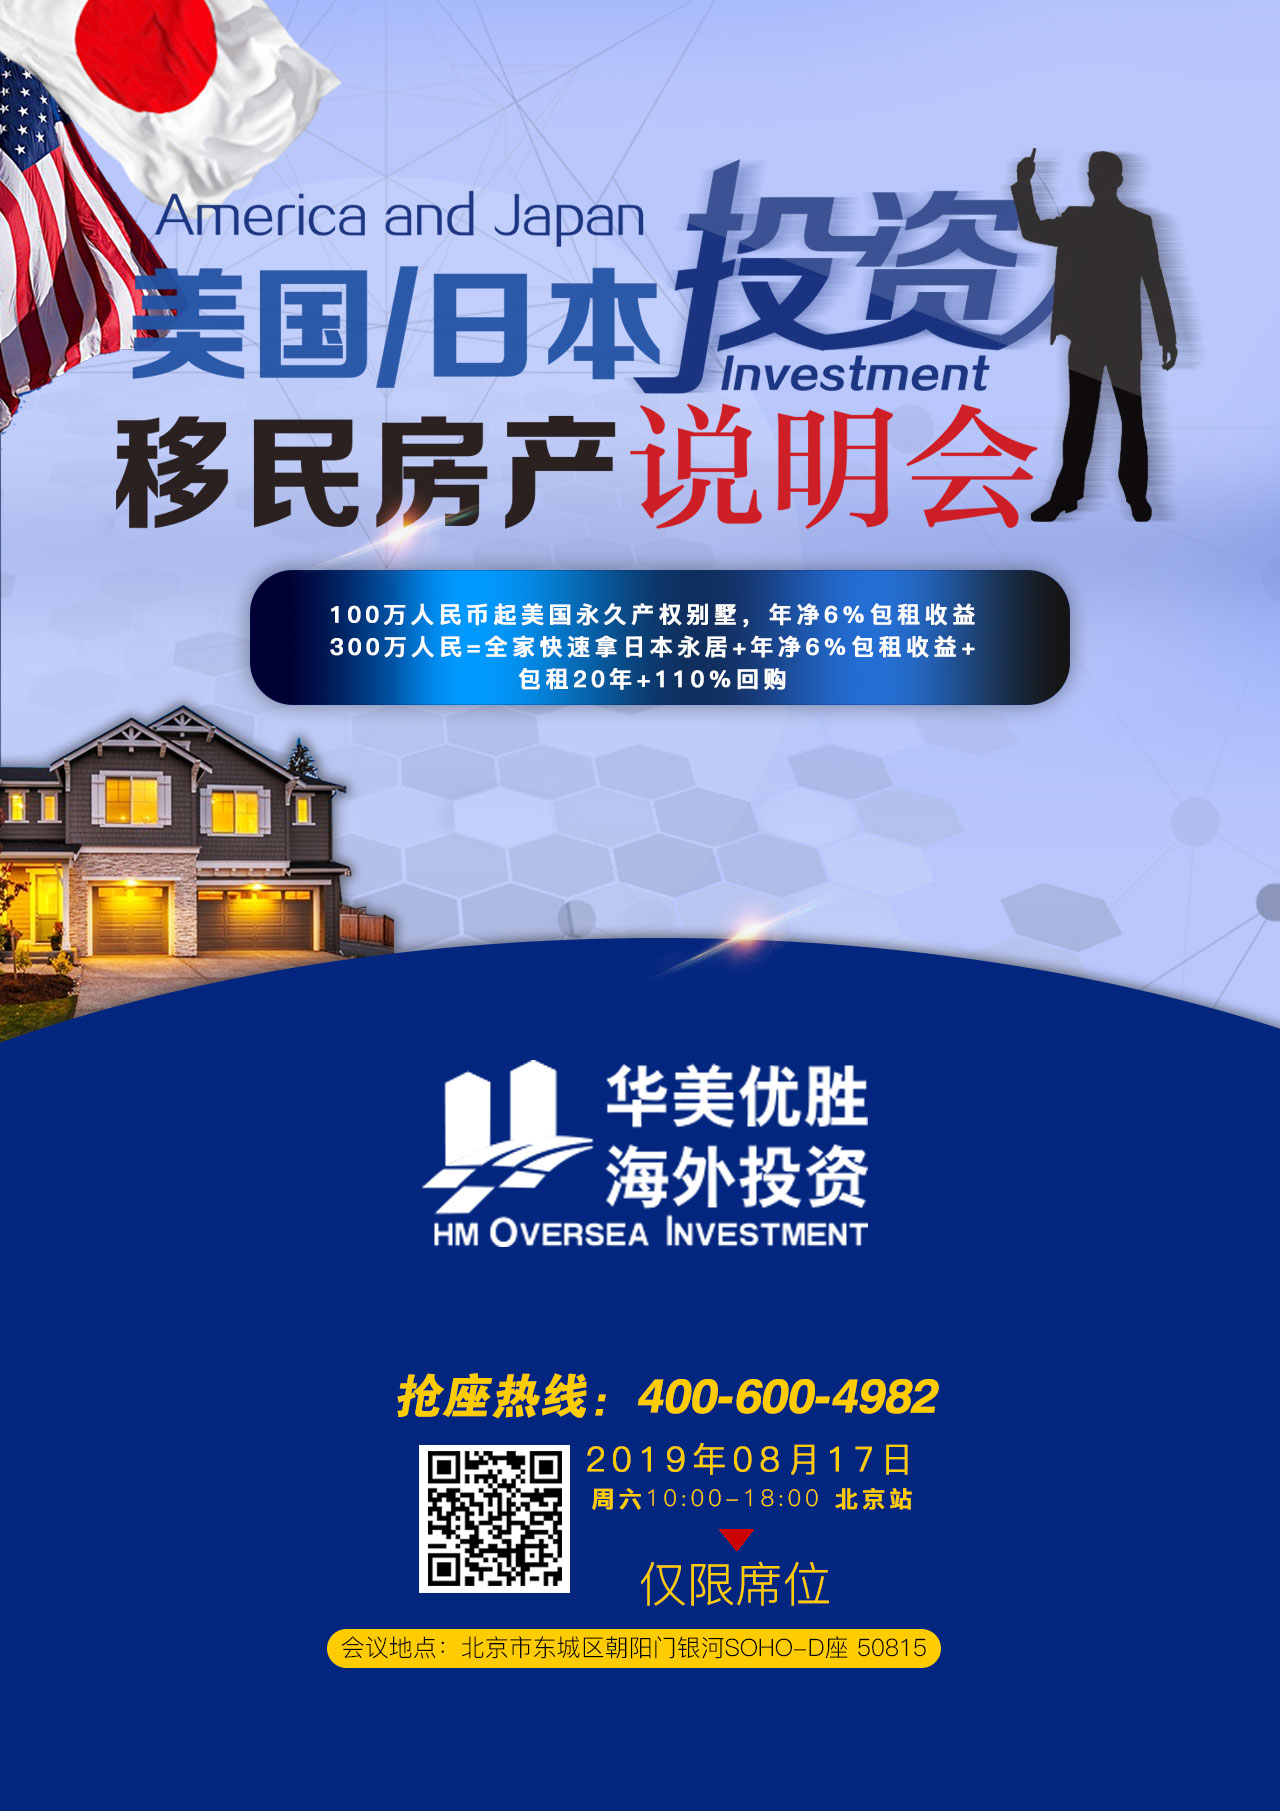 8月17日星期六上午10:00-下午6:00分别在北京举办《美国、日本投资移民房产说明会》